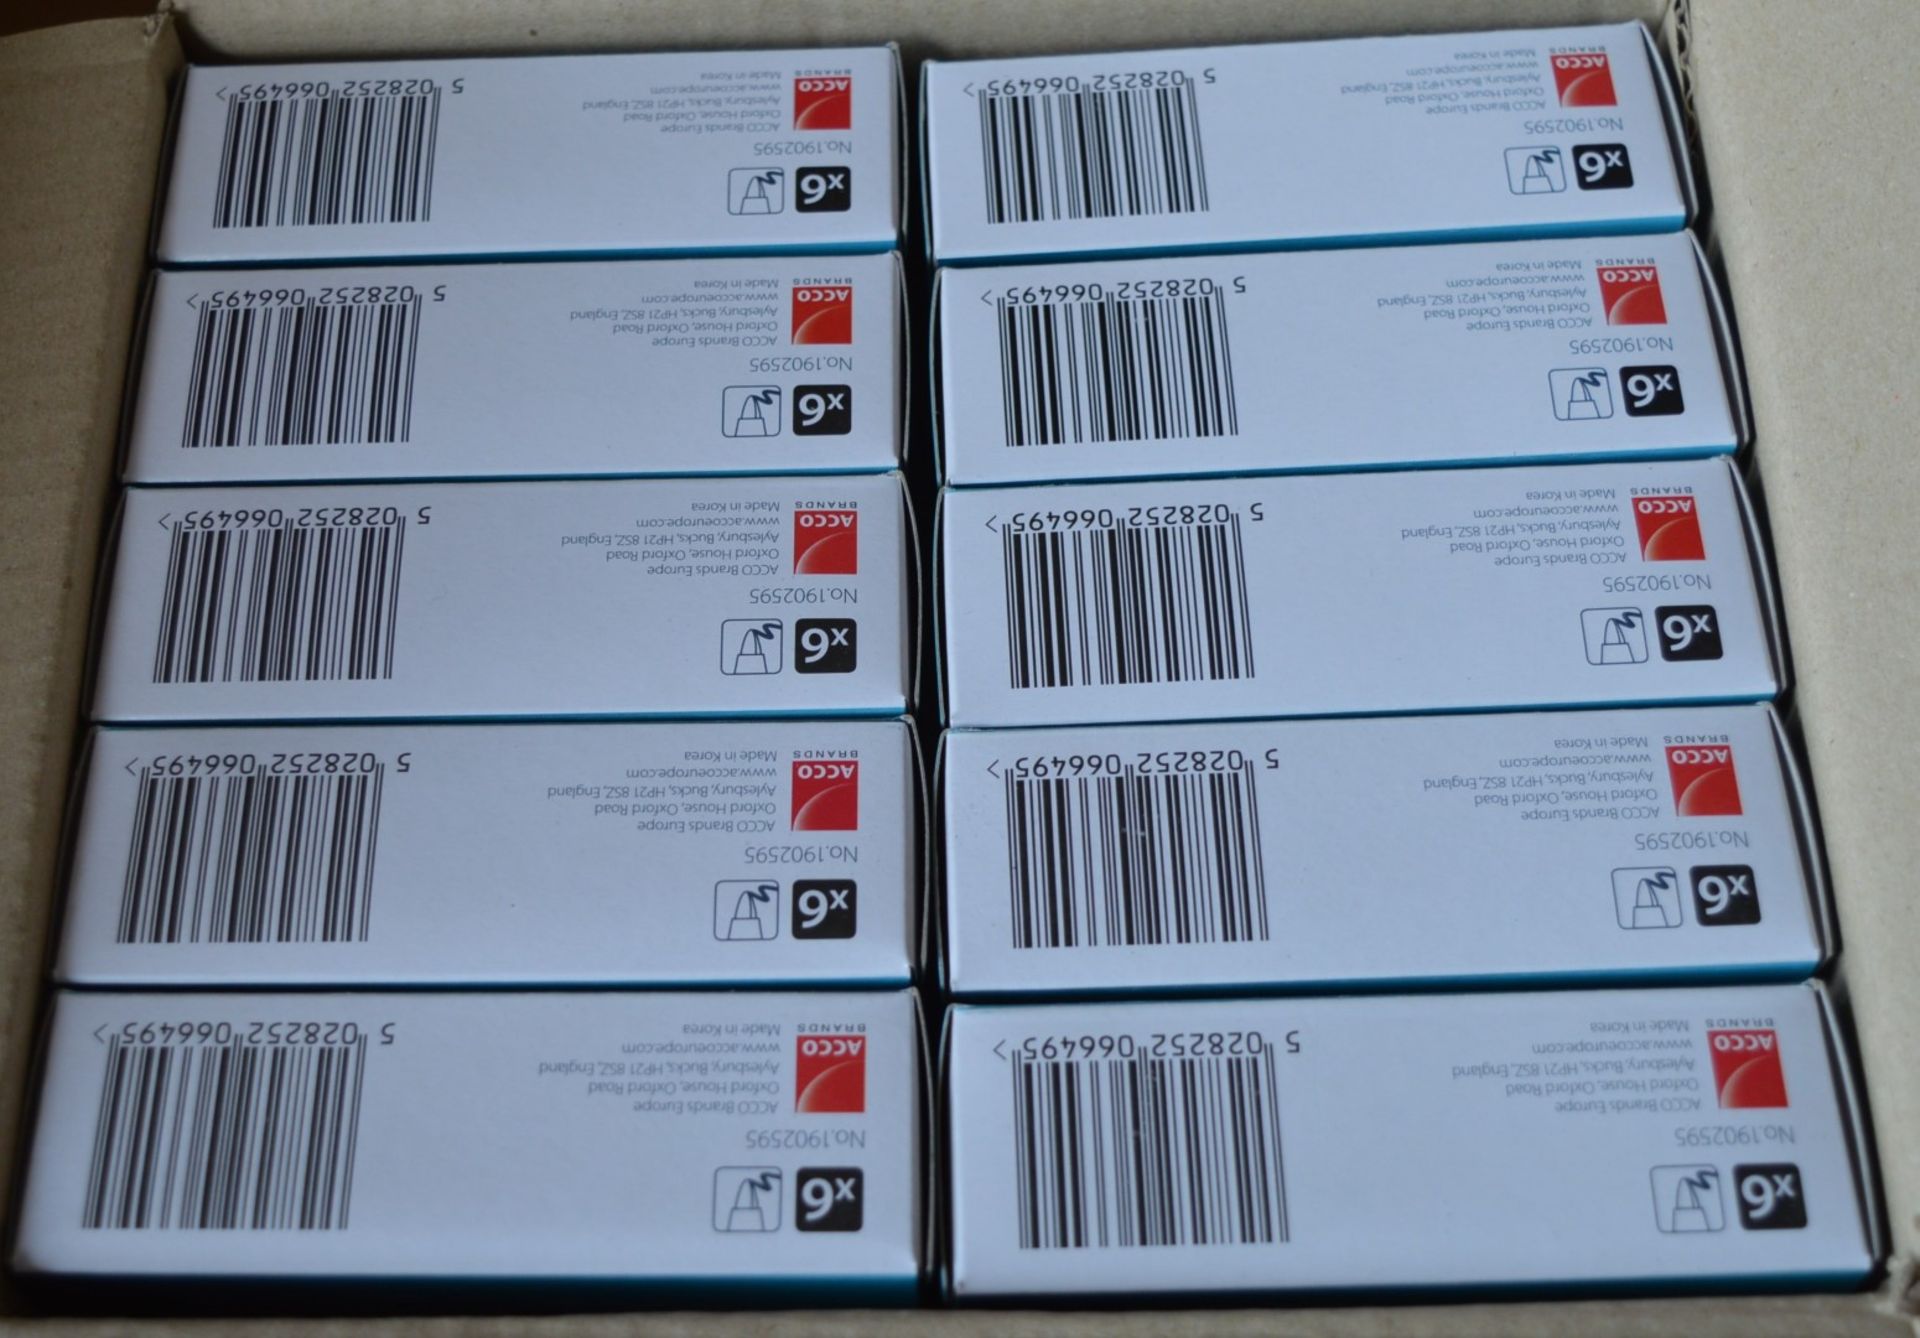 120 x Packs of Nobo Kapture Ink Cartridges - Includes 120 x Packs of 6 x Ink Cartridges - For Use - Image 7 of 11